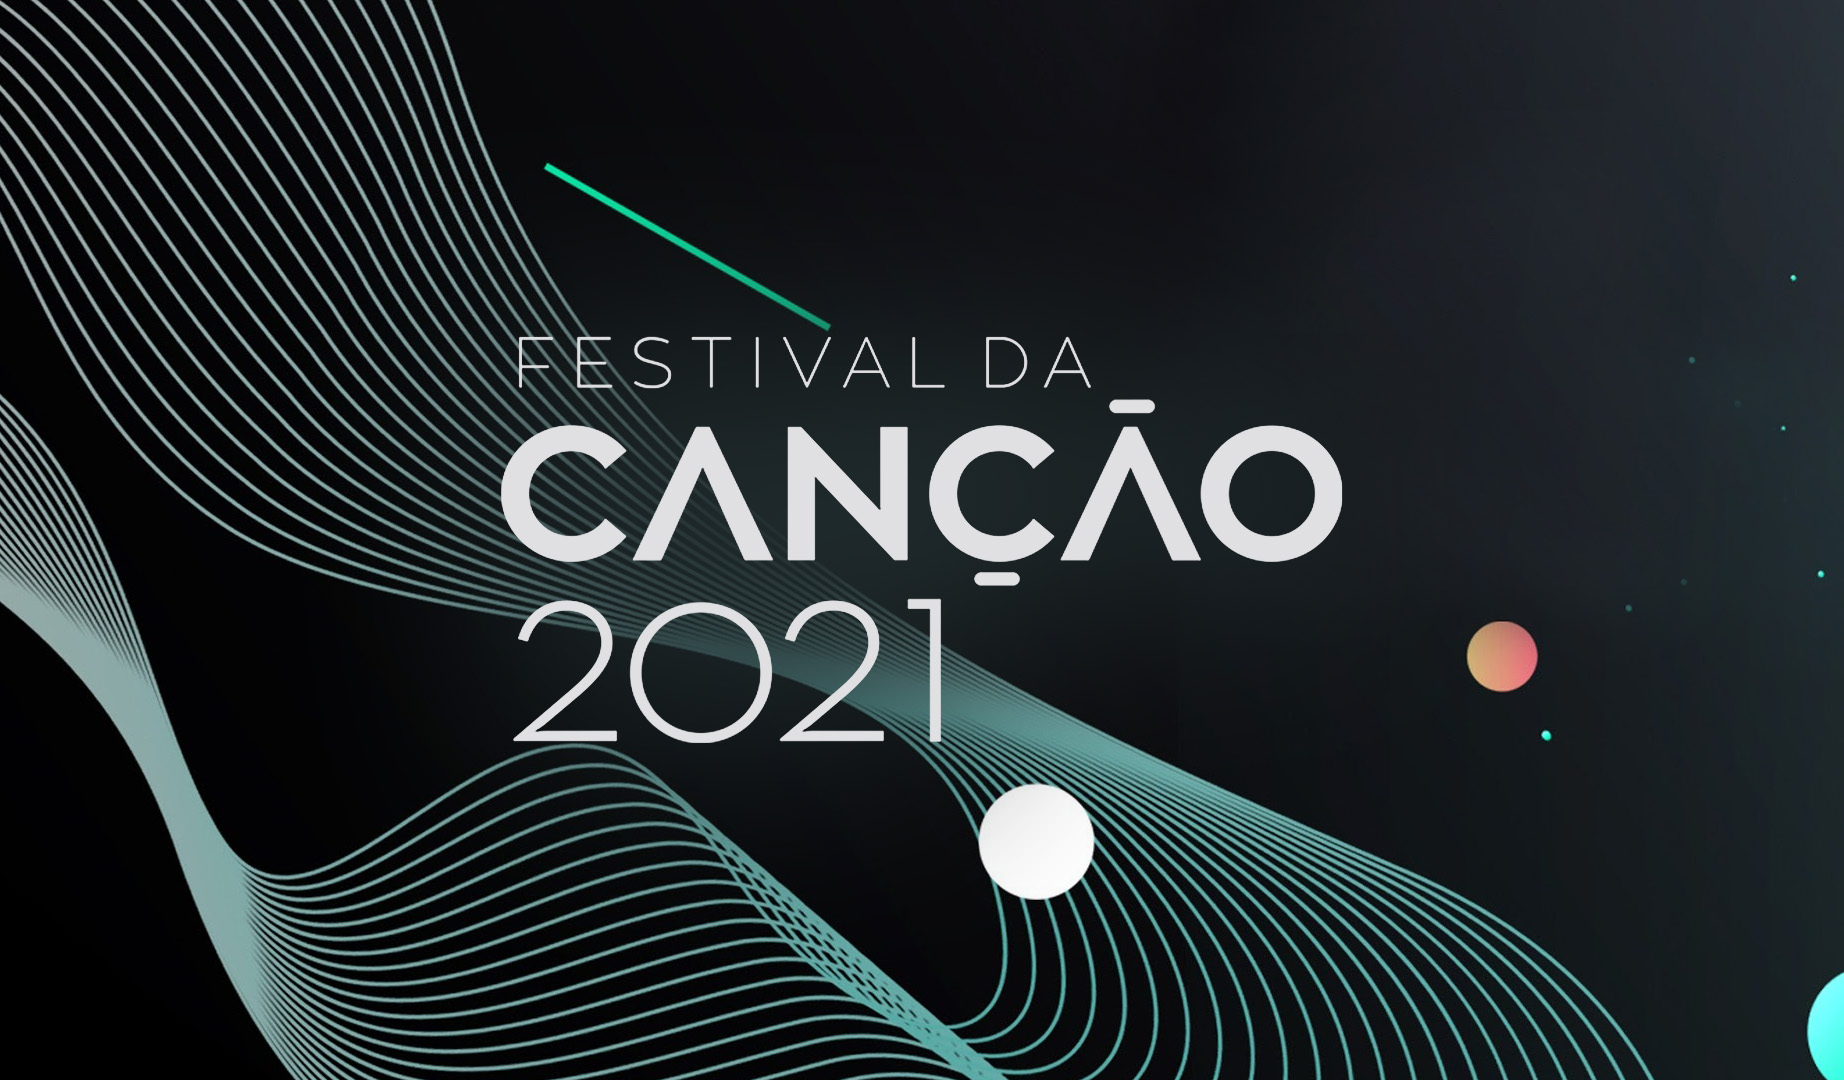 Tonight: Festival da Cançao 2021 reaches its second semi in Portugal